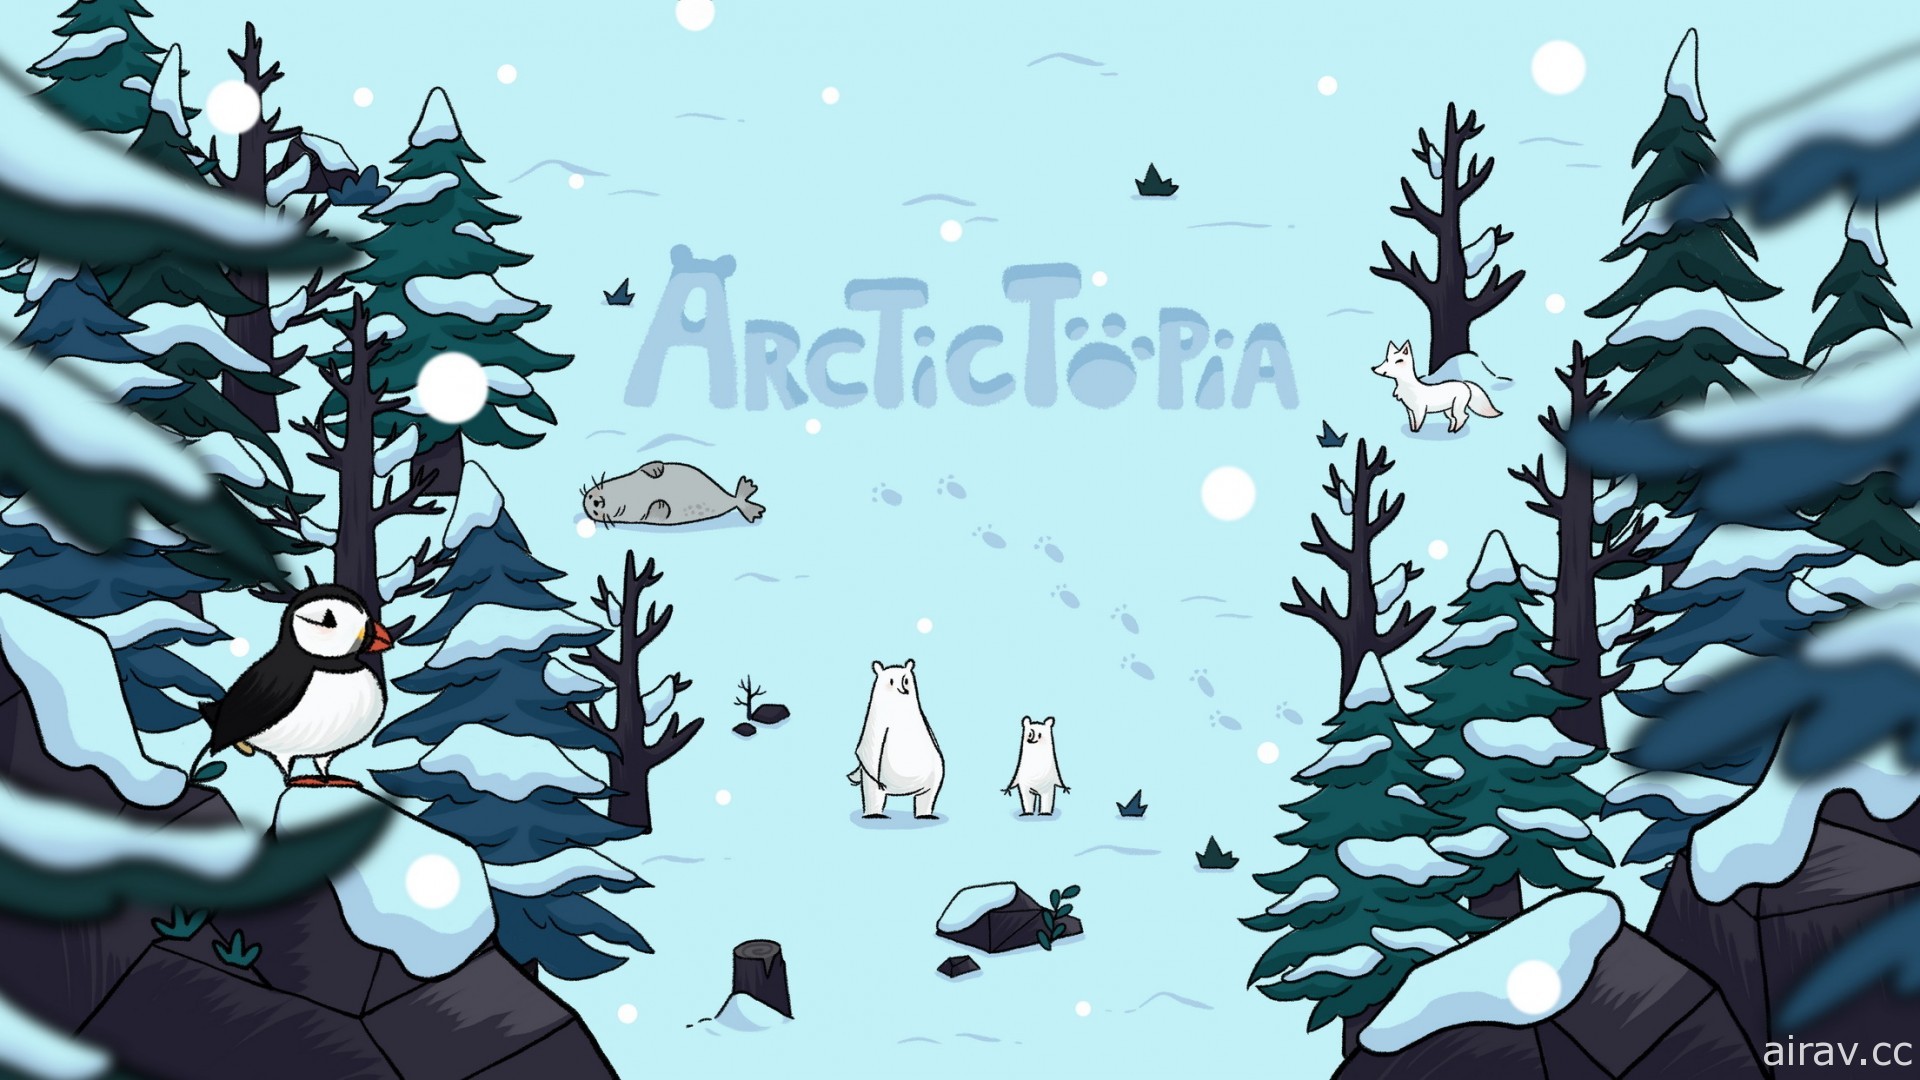 益智解谜游戏《极地乐园 Arctictopia》PC 版 8 月问世